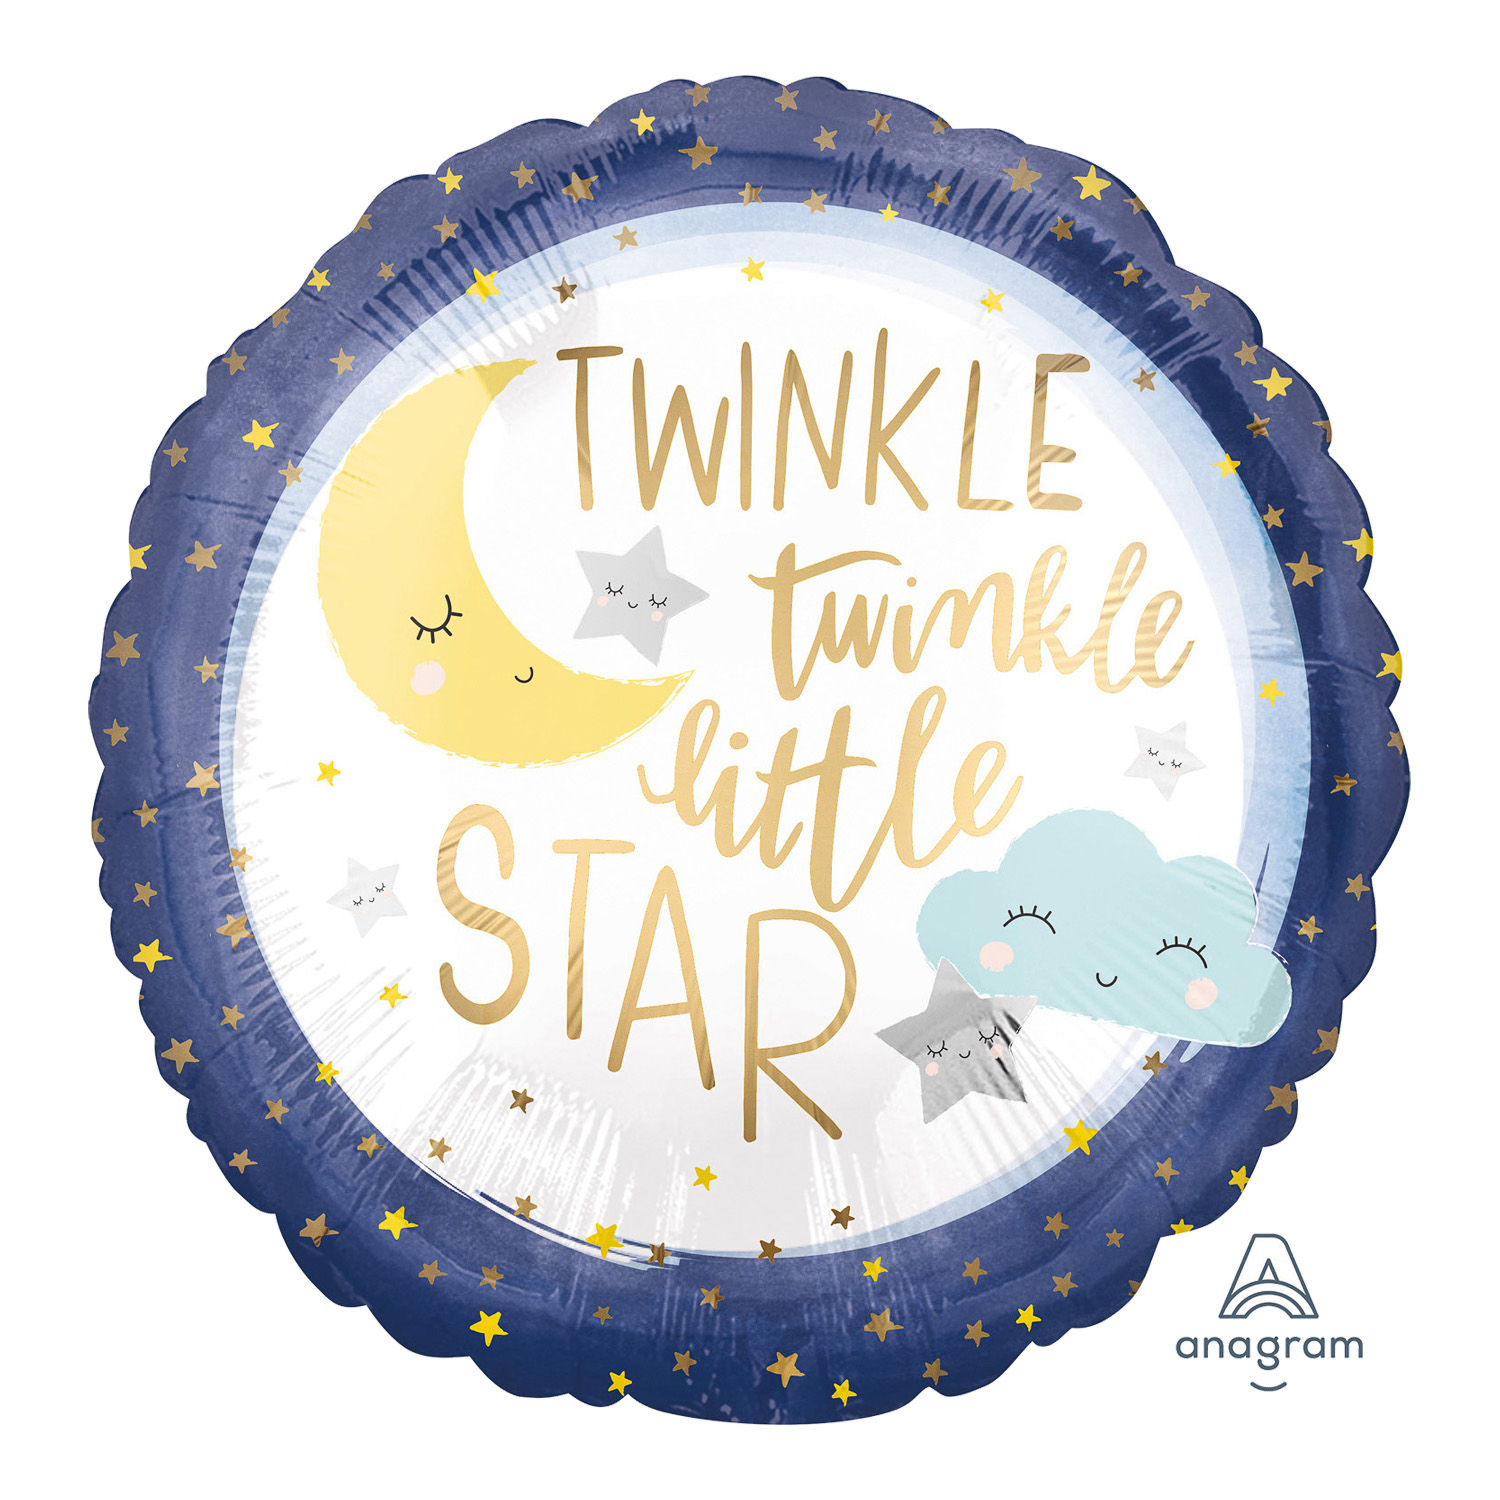 Folienballon Twinkle little Star